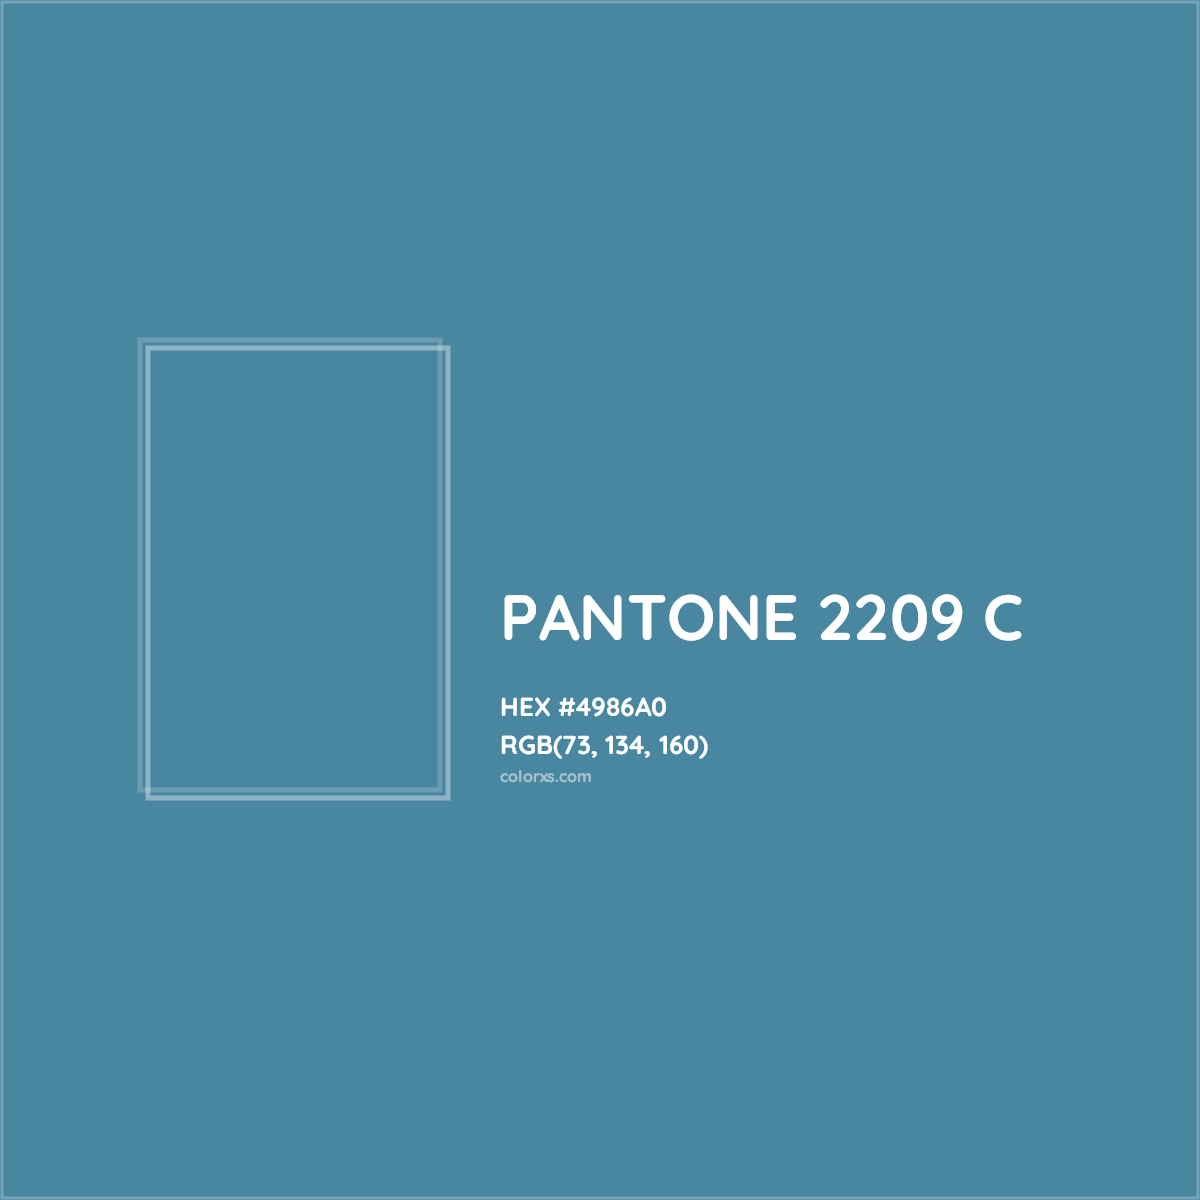 HEX #4986A0 PANTONE 2209 C CMS Pantone PMS - Color Code